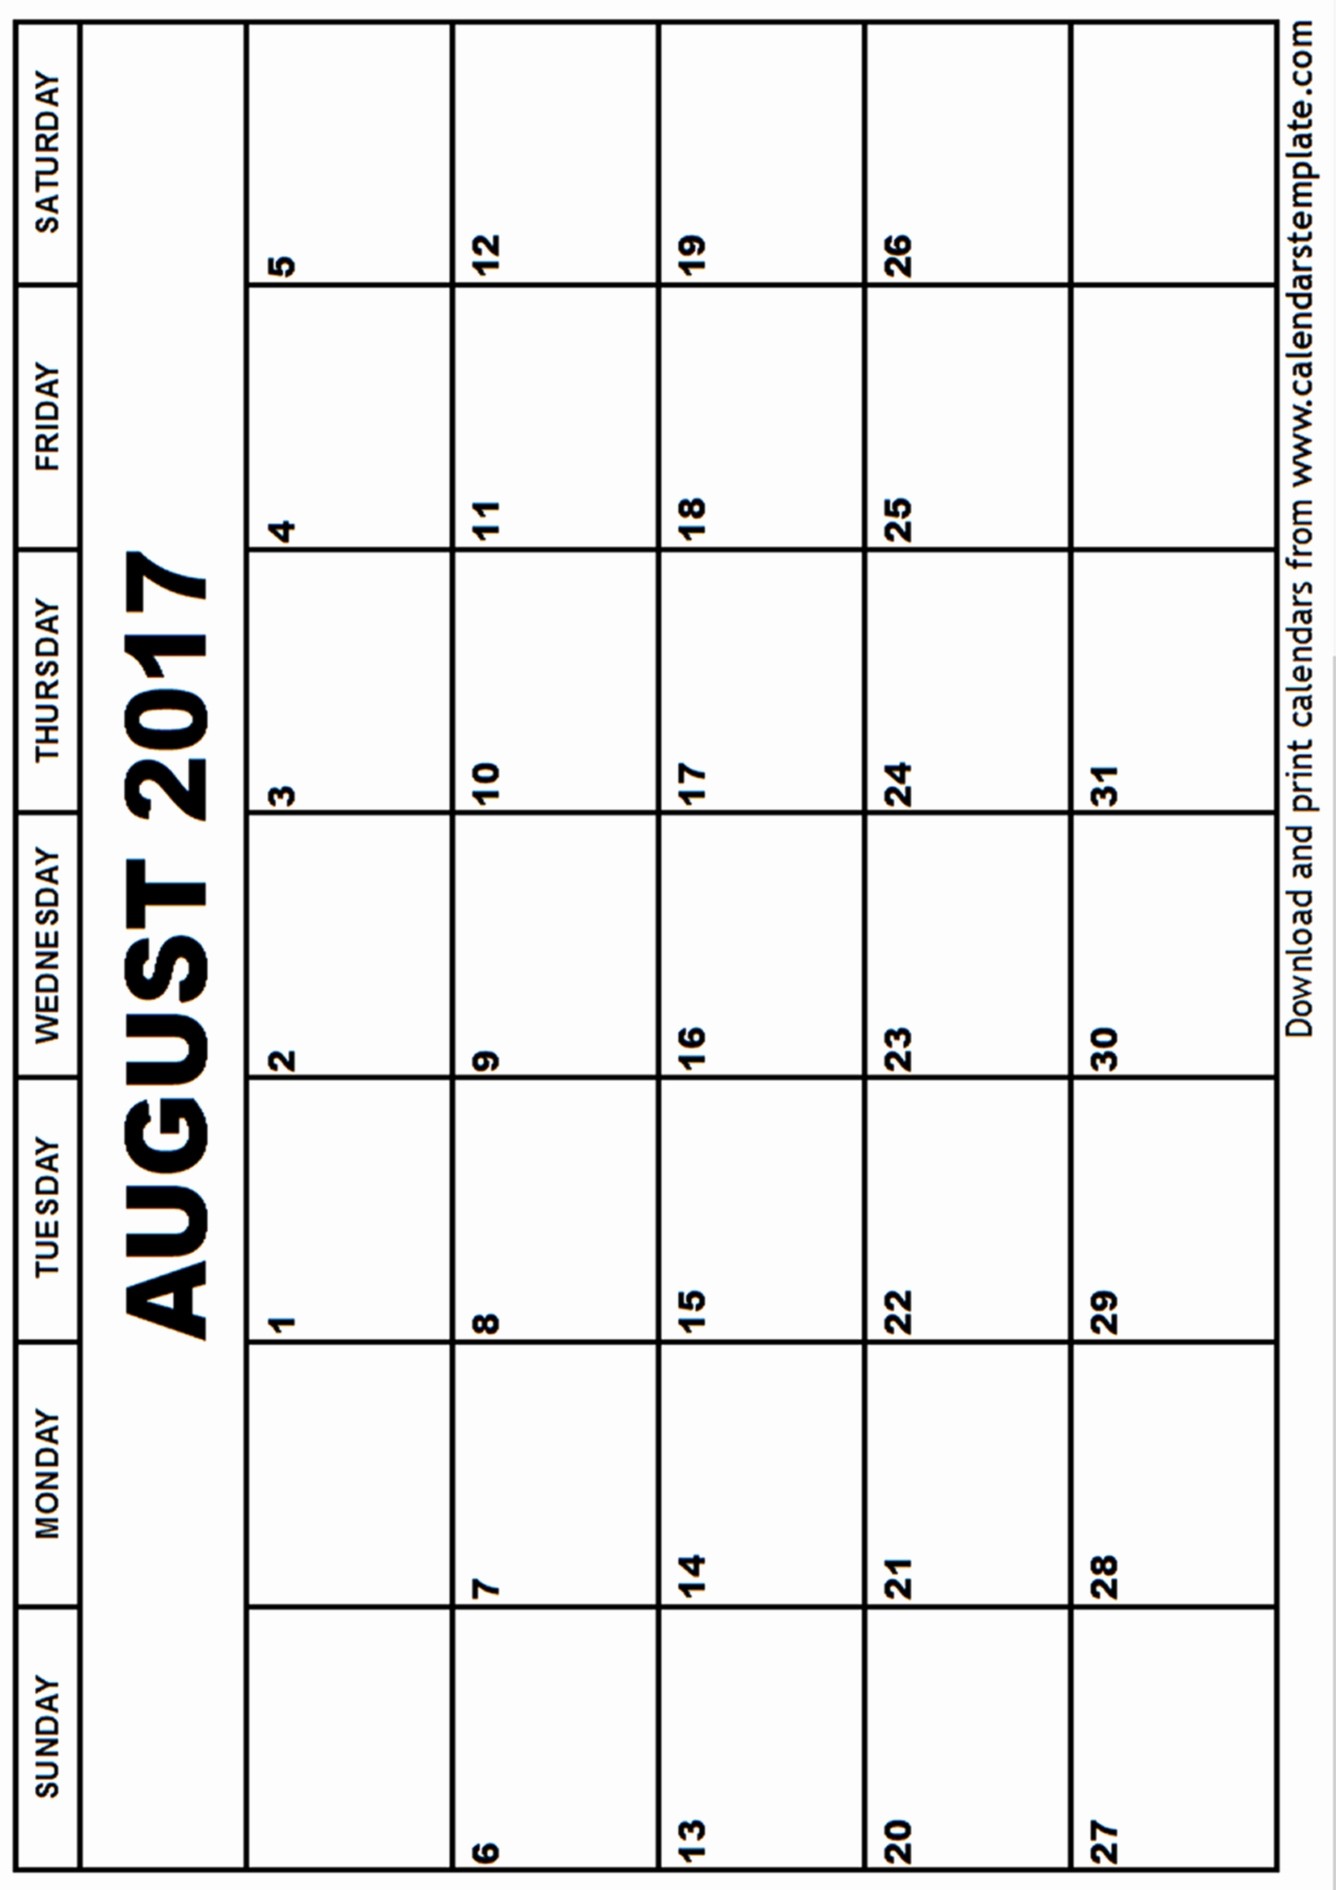 Blank Calendar Template August 2017 Inspirational August 2017 Calendar Template